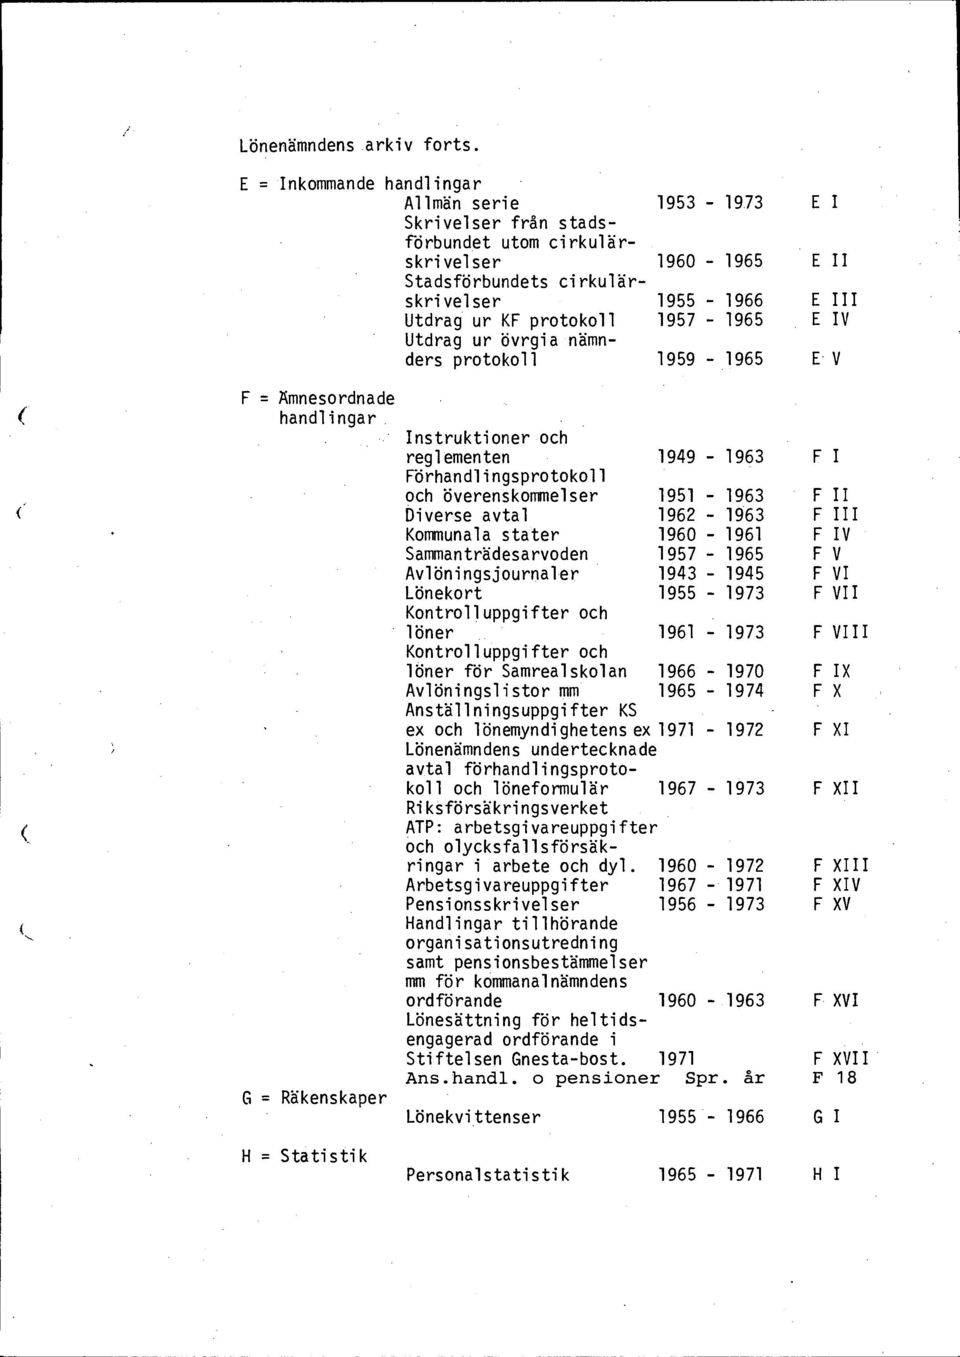 IV Utdrag ur övrgia nämnders protokoll 1959-1965 EV H = Statistik Instruktioner och reglementen 1949-1963 Förhandlingsprotokoll och överenskommelser 1951-1963 Diverse avtal 1962-1963 Kommunala stater